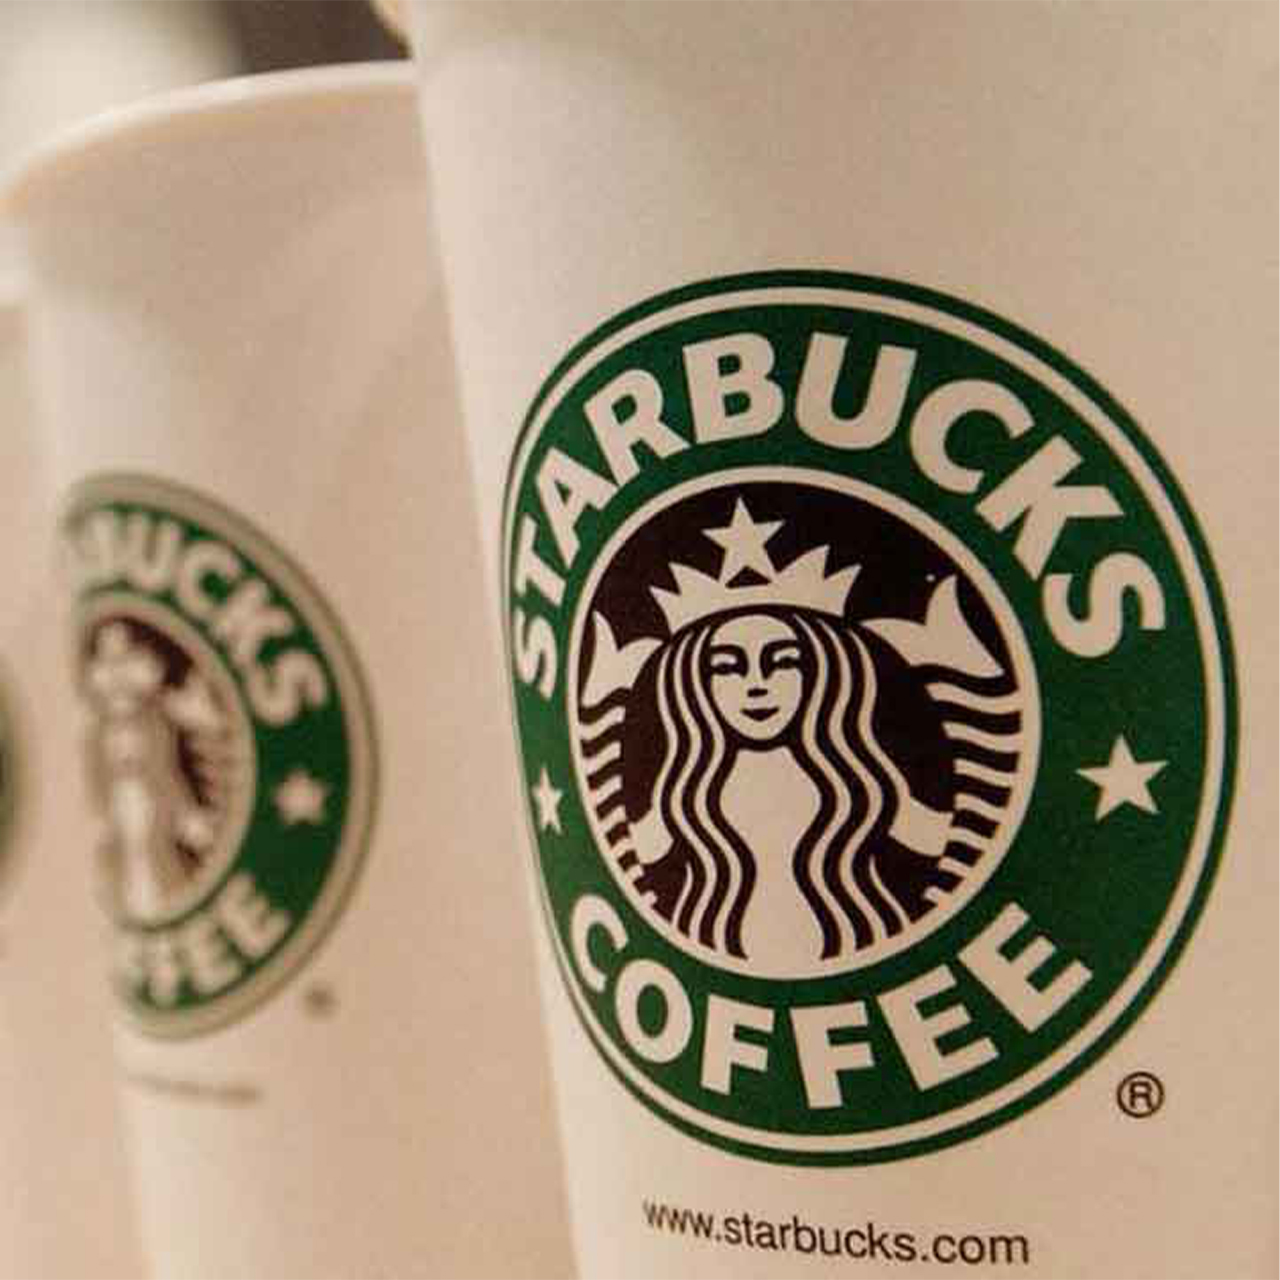 Woke Credit Scores, Blackrock Wages War, and Starbucks Gets Based?